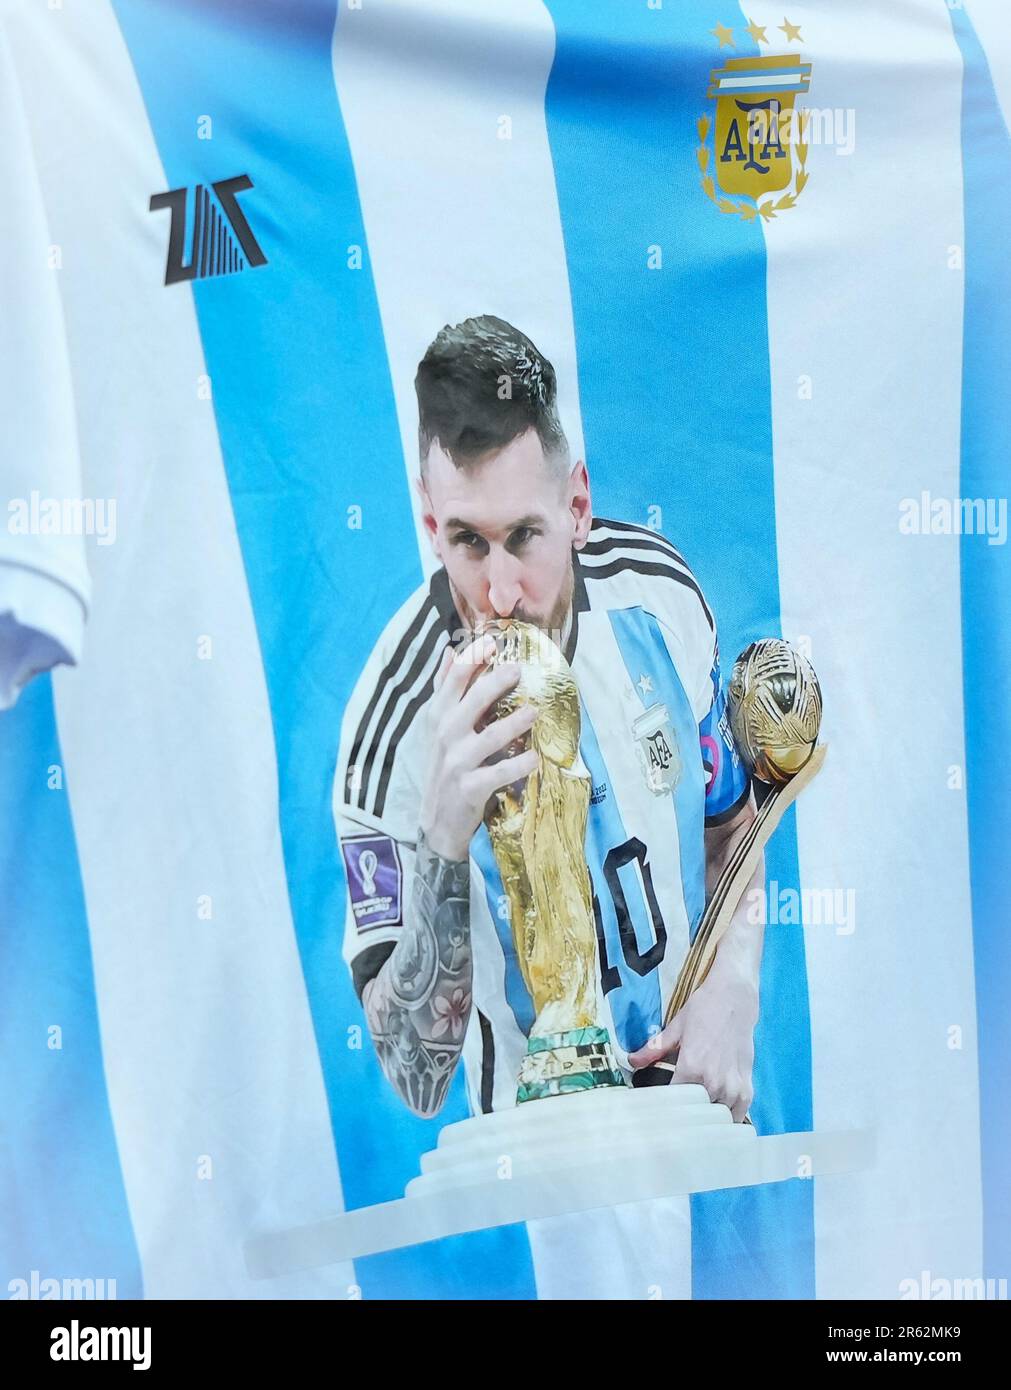 Un supporters affiche un match préliminaire de la coupe du monde Argentina Lionel Messi lors du match de la Ligue 1 entre Paris Saint Germain et Clermont foot au pair Banque D'Images